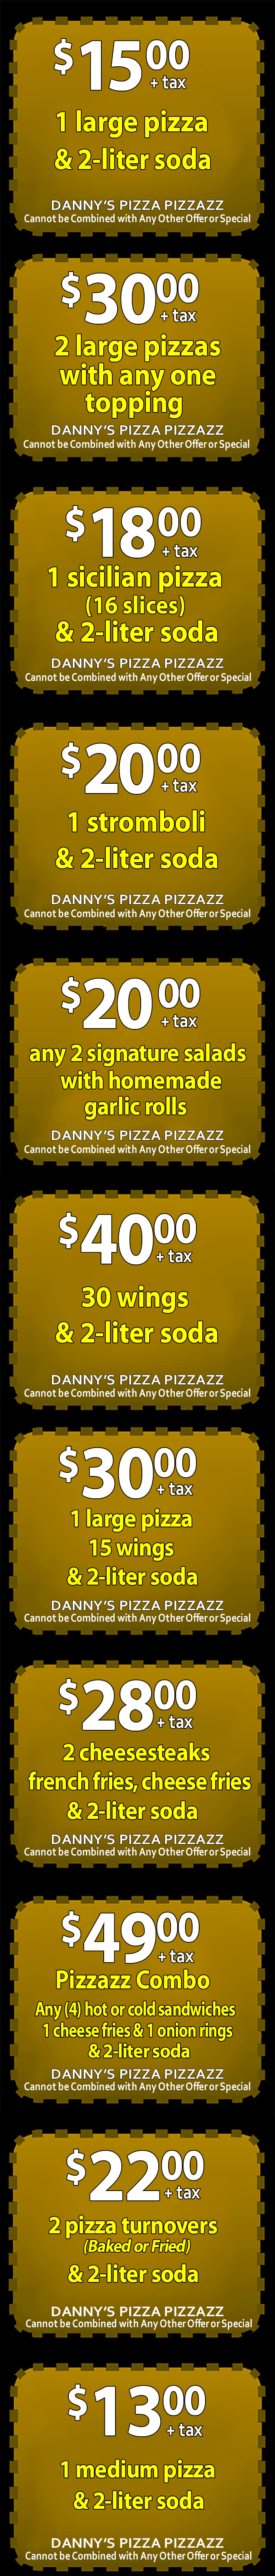 dannys-pizza-pizzazz-winslow-nj mobile coupons